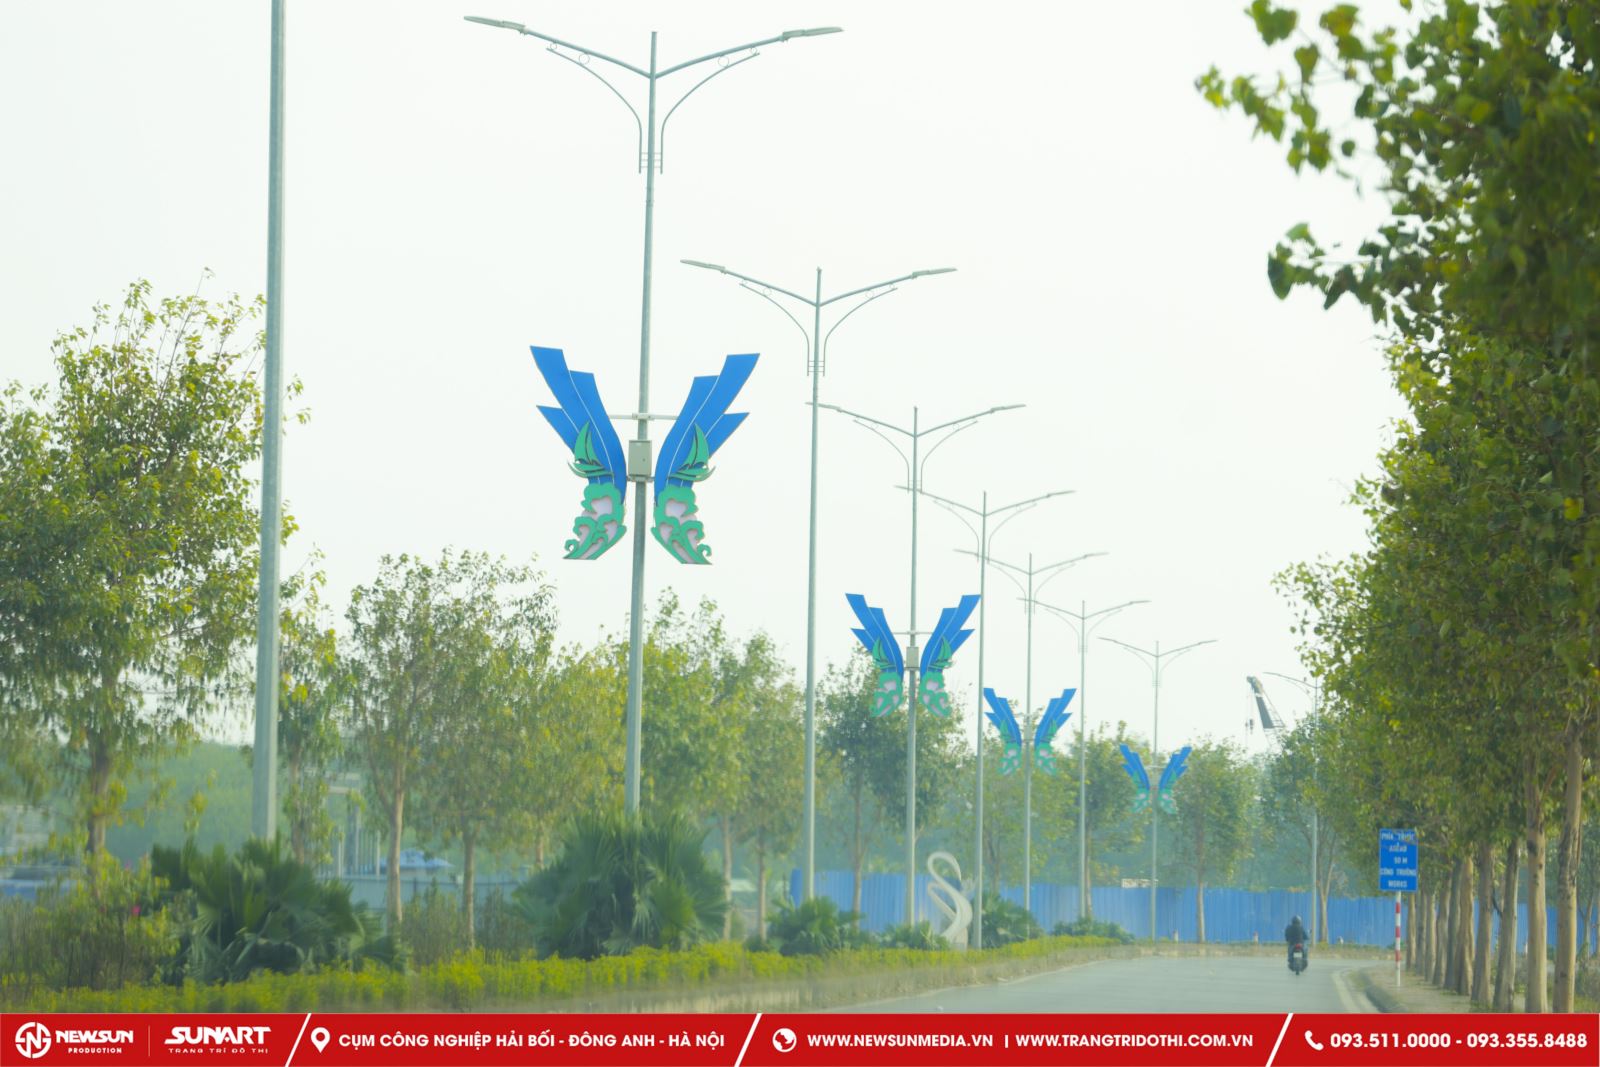 hình ảnh hoa văn trang trí cột điện đẹp, ấn tượng tại huyện Thủy Nguyên, Hải Phòng1